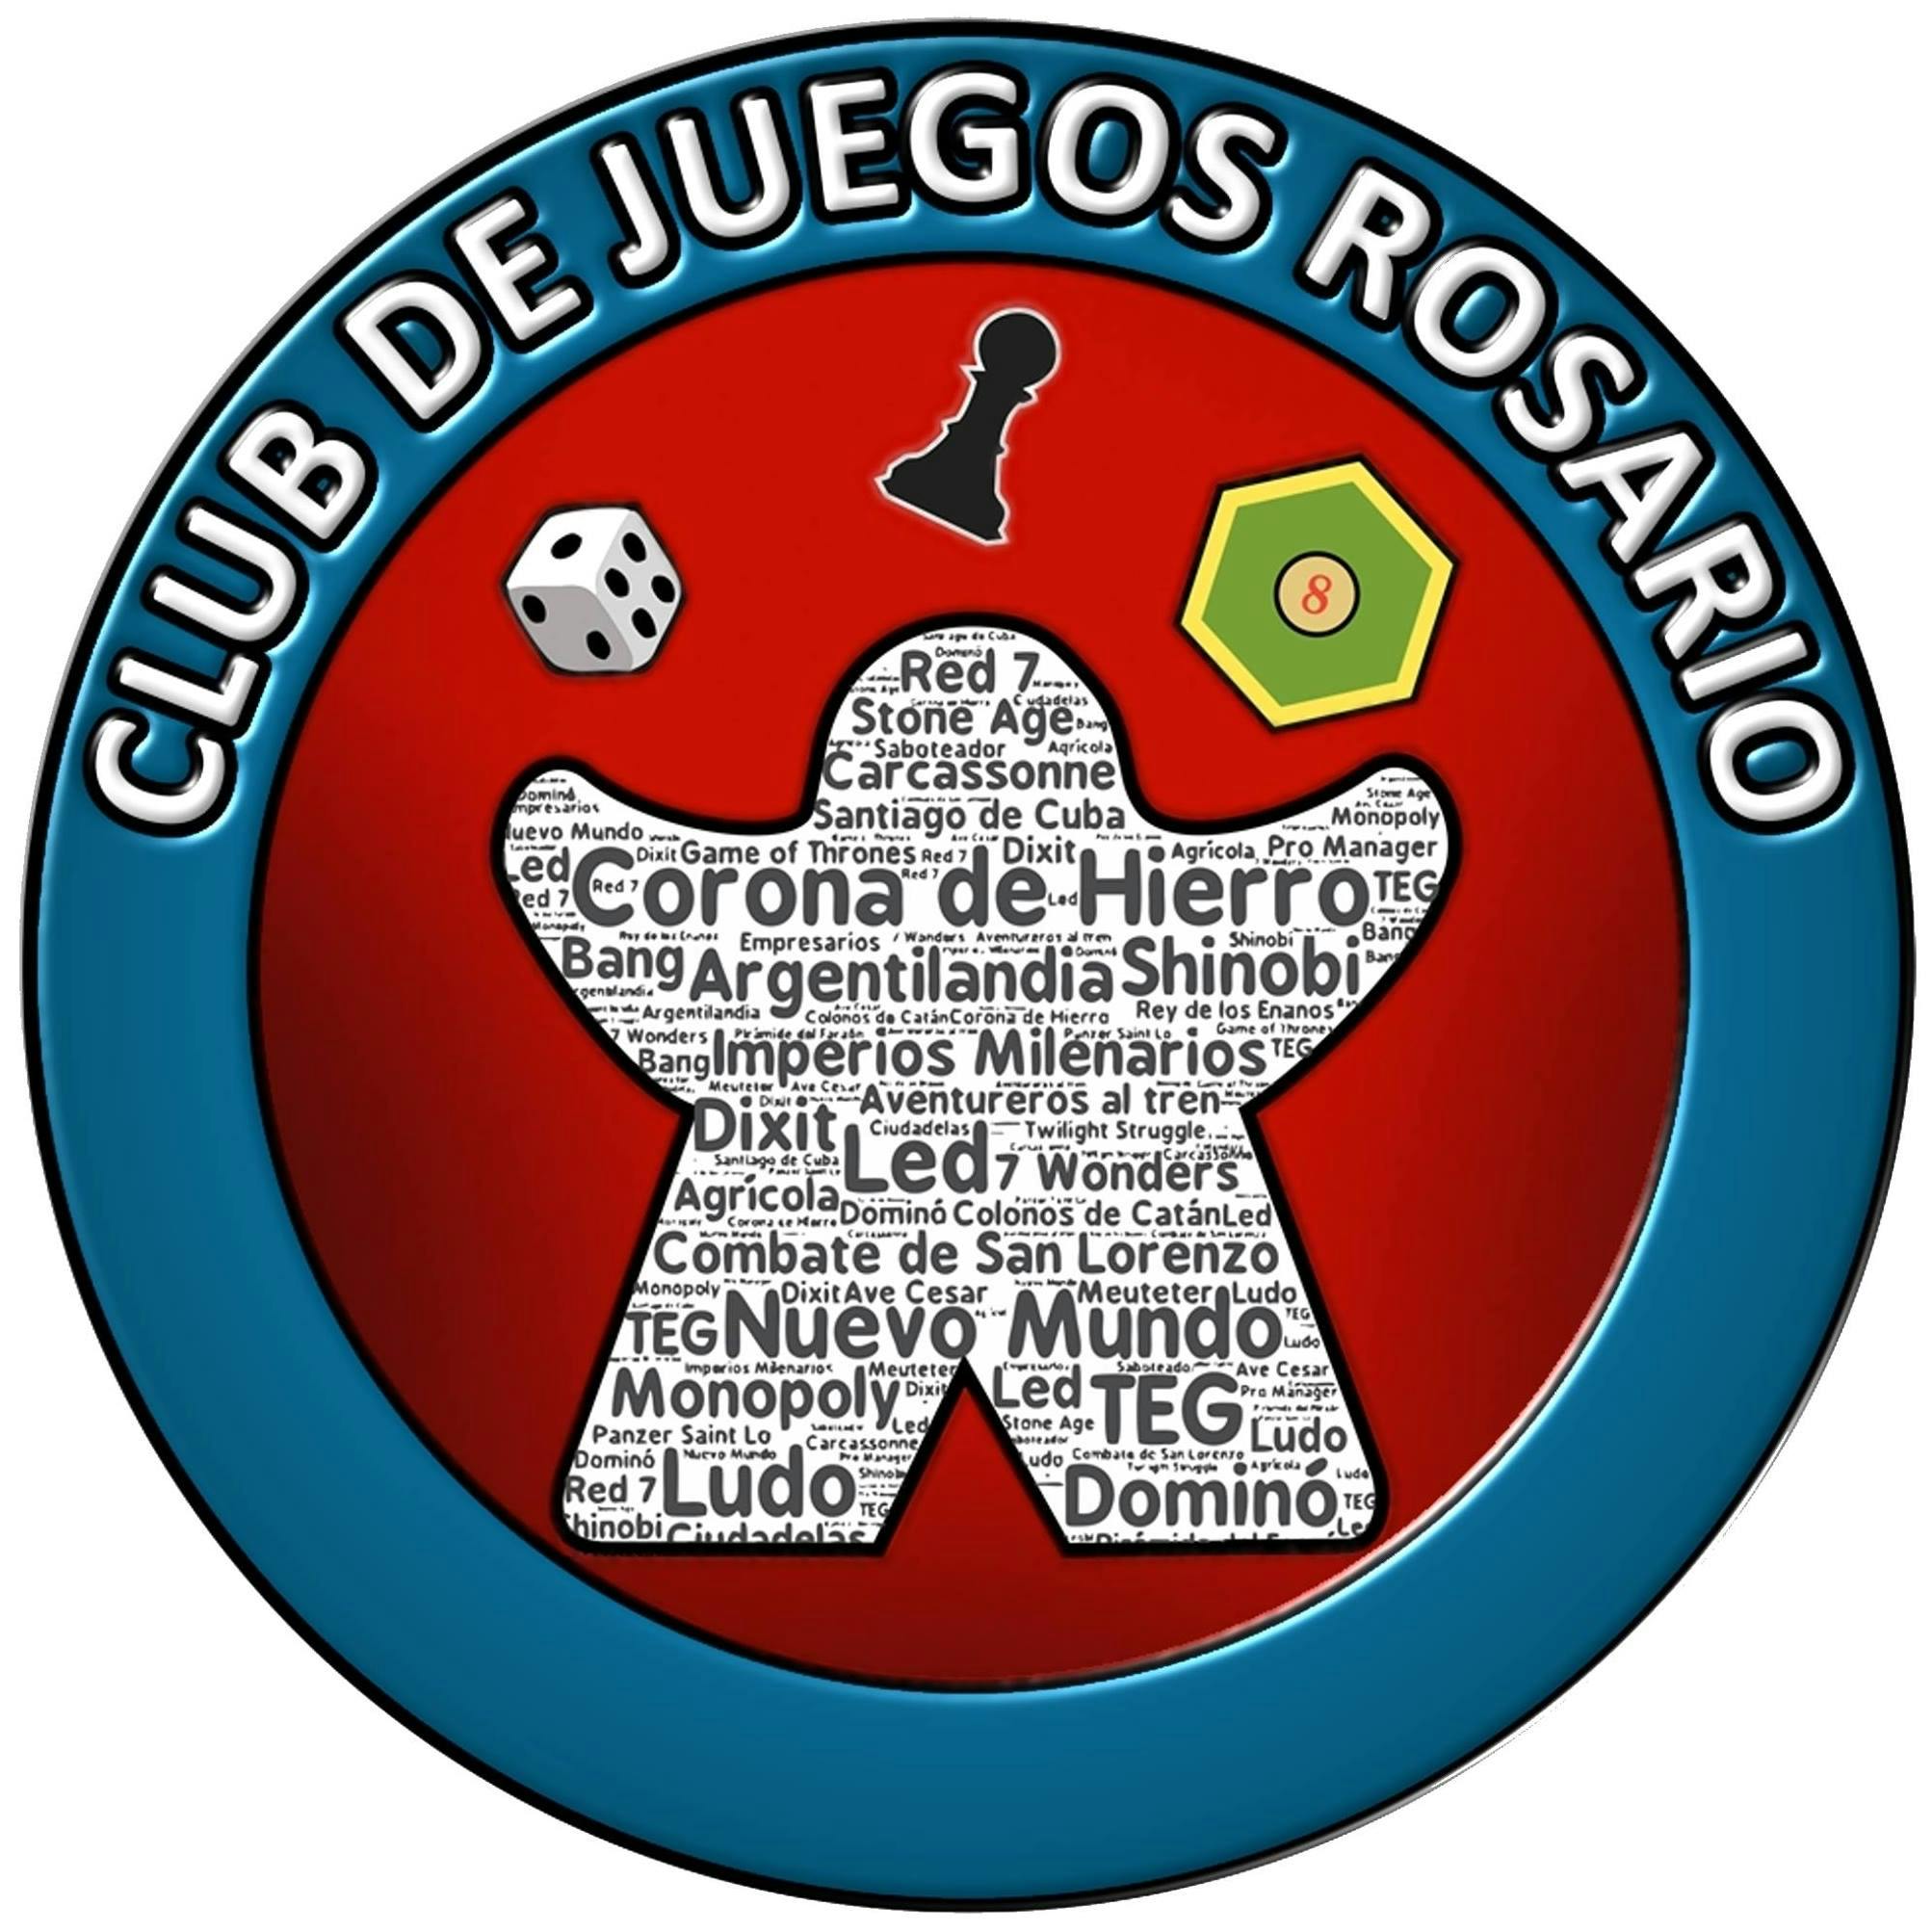 Club de Juegos Rosario